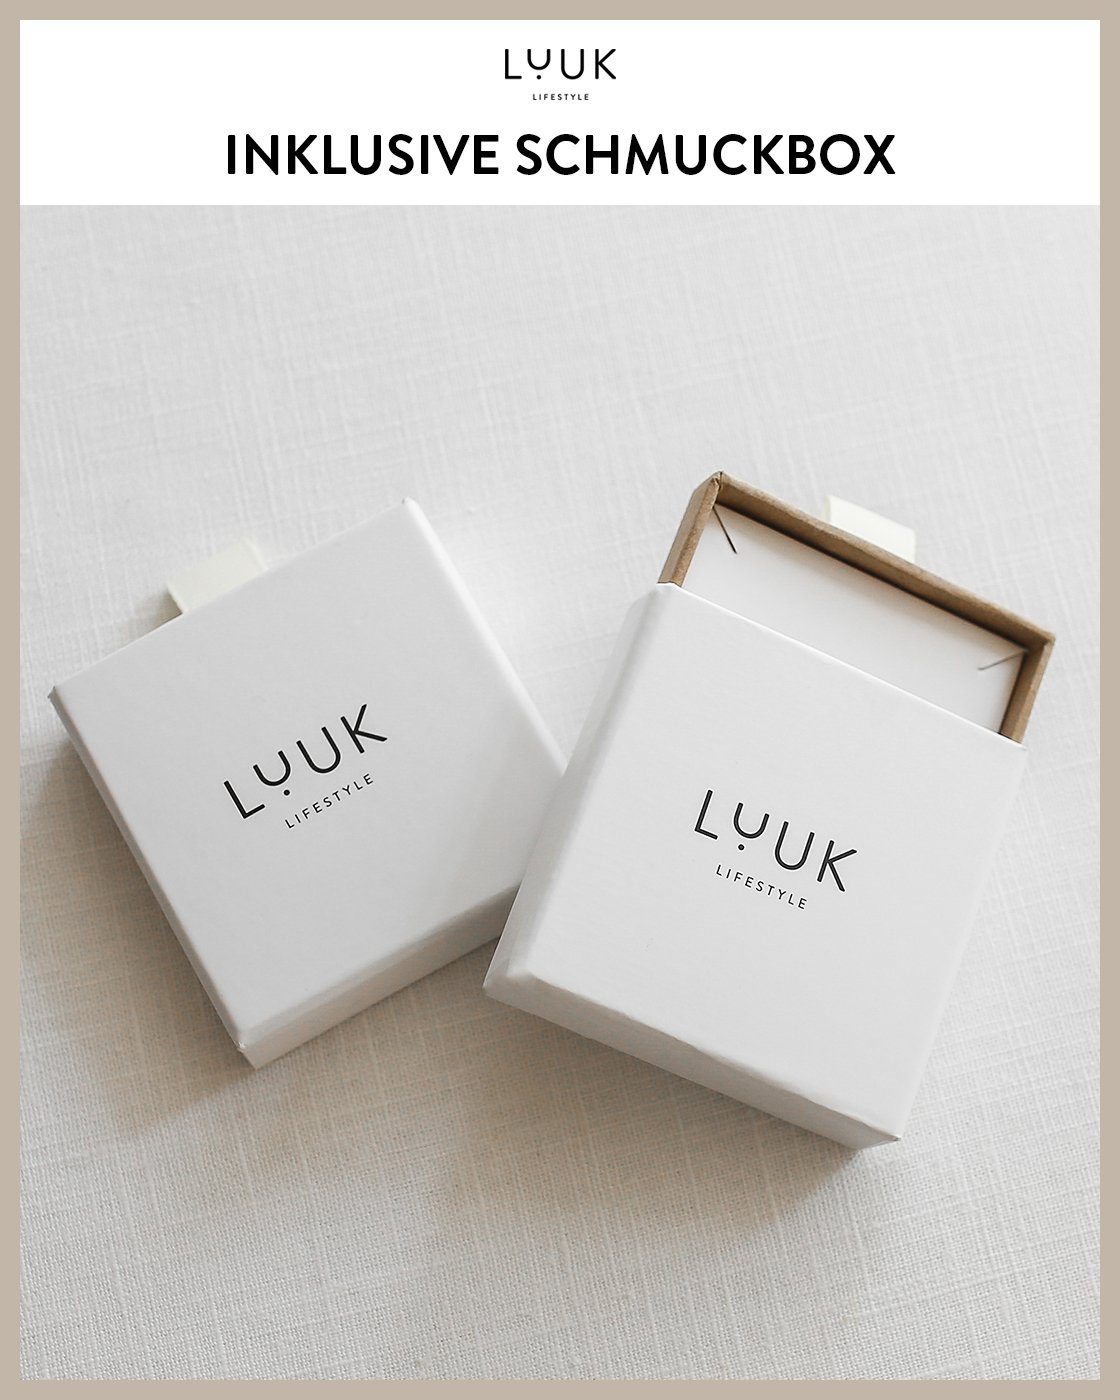 Gold LUUK Chain, toller LIFESTYLE Schmuckbox Schmuckset inklusive